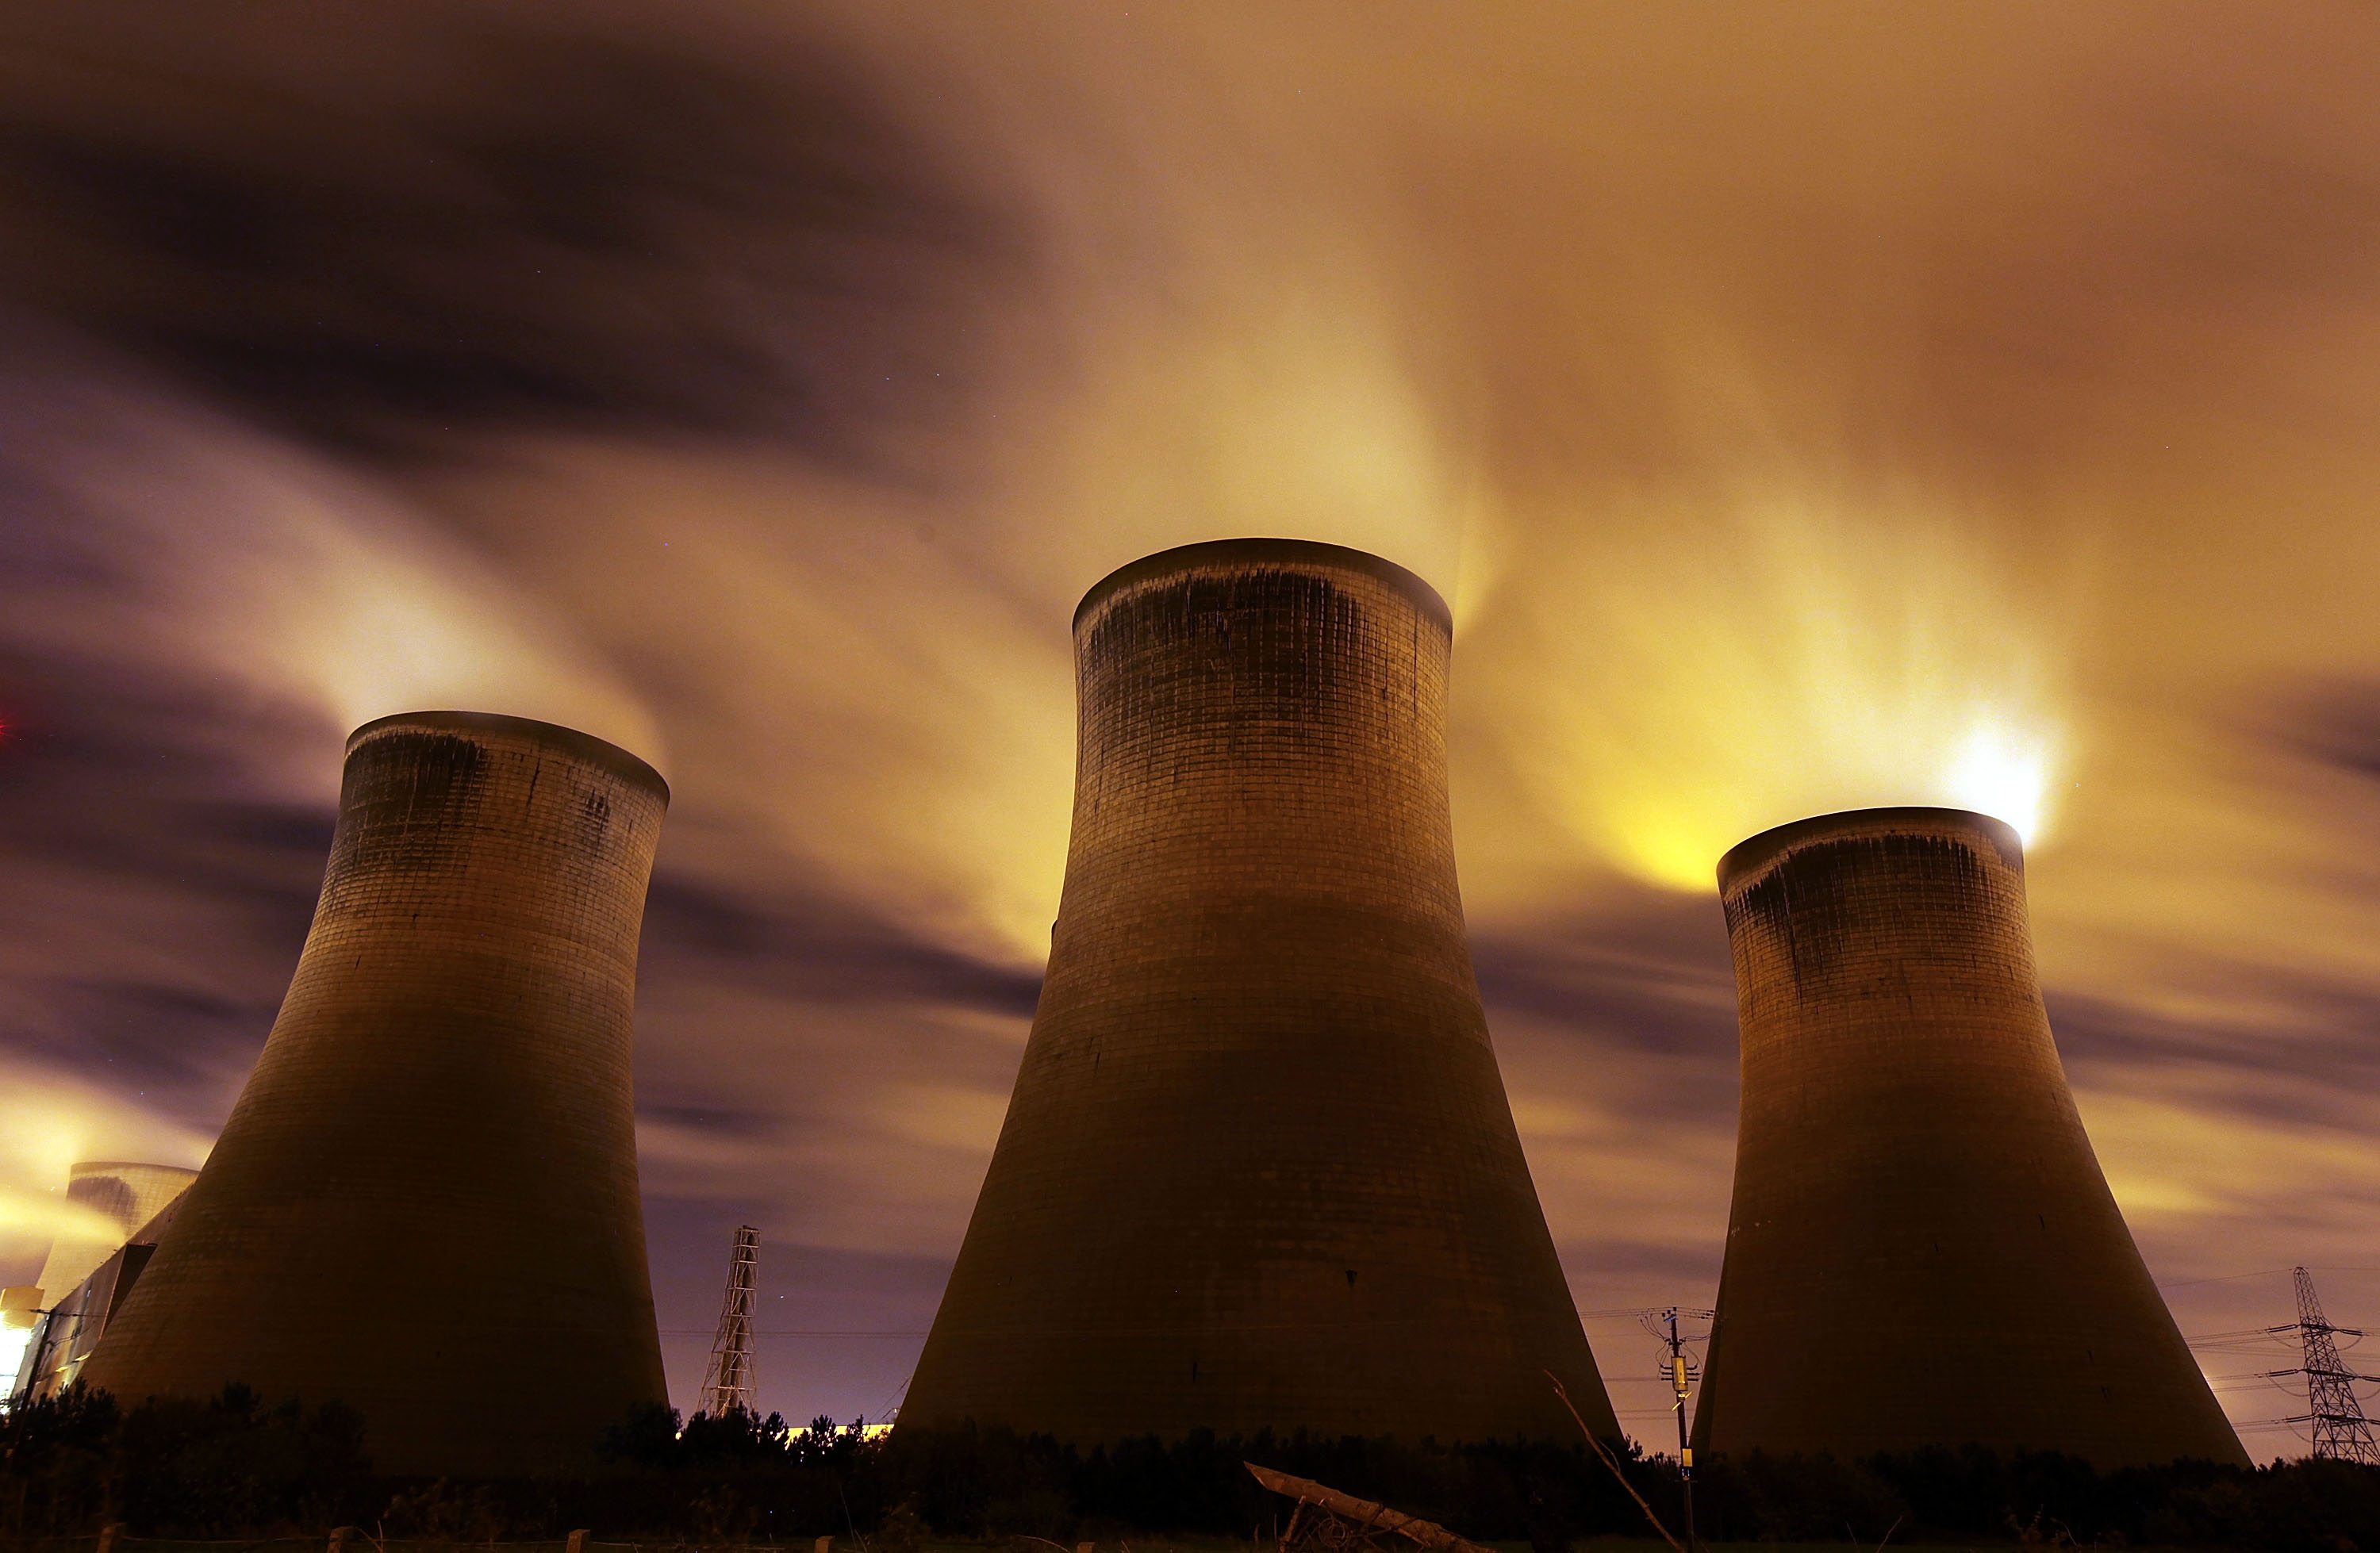 La central eléctrica de Fiddlers Ferry alimentada con carbón emite vapor en el cielo nocturno el 16 de noviembre de 2009 en Warrington, Reino Unido.